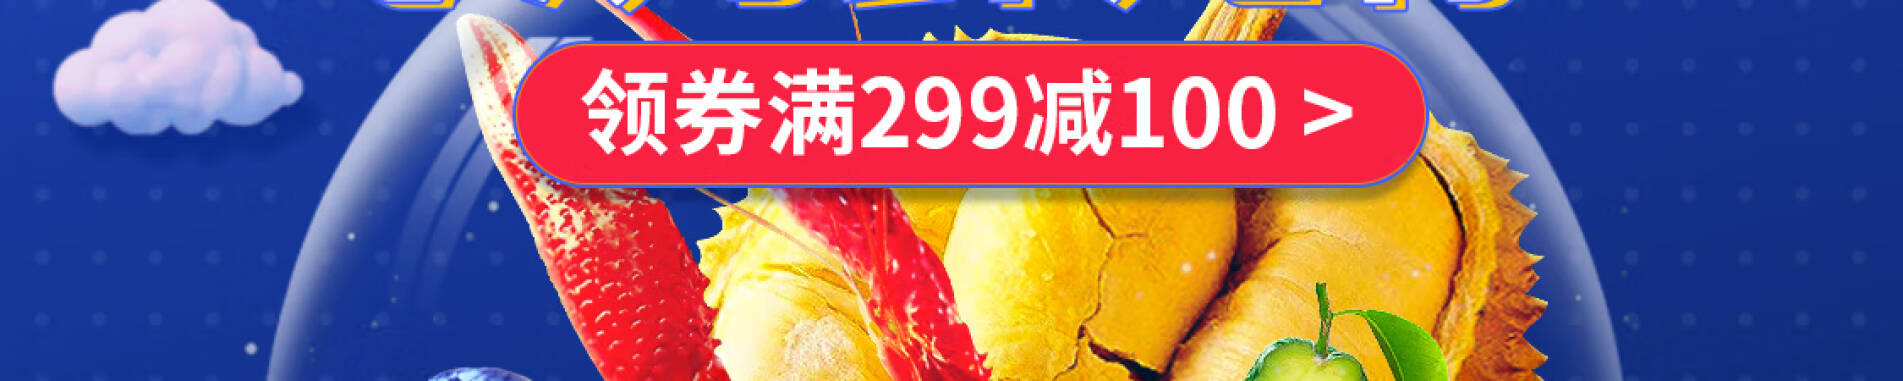 京东商城  生鲜水果促销 满299减100元